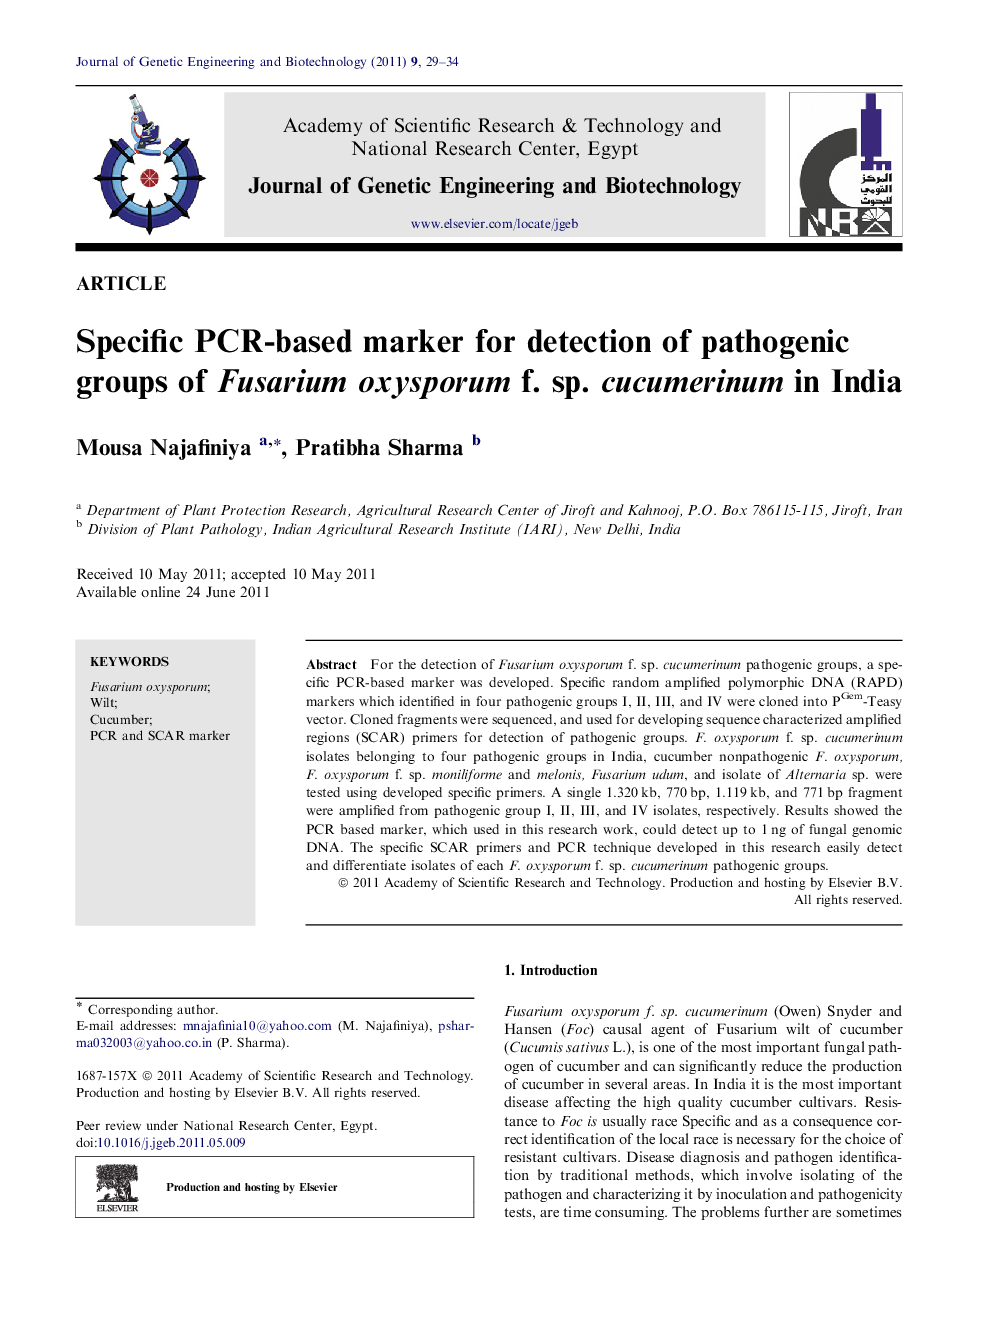 Specific PCR-based marker for detection of pathogenic groups of Fusarium oxysporum f. sp. cucumerinum in India